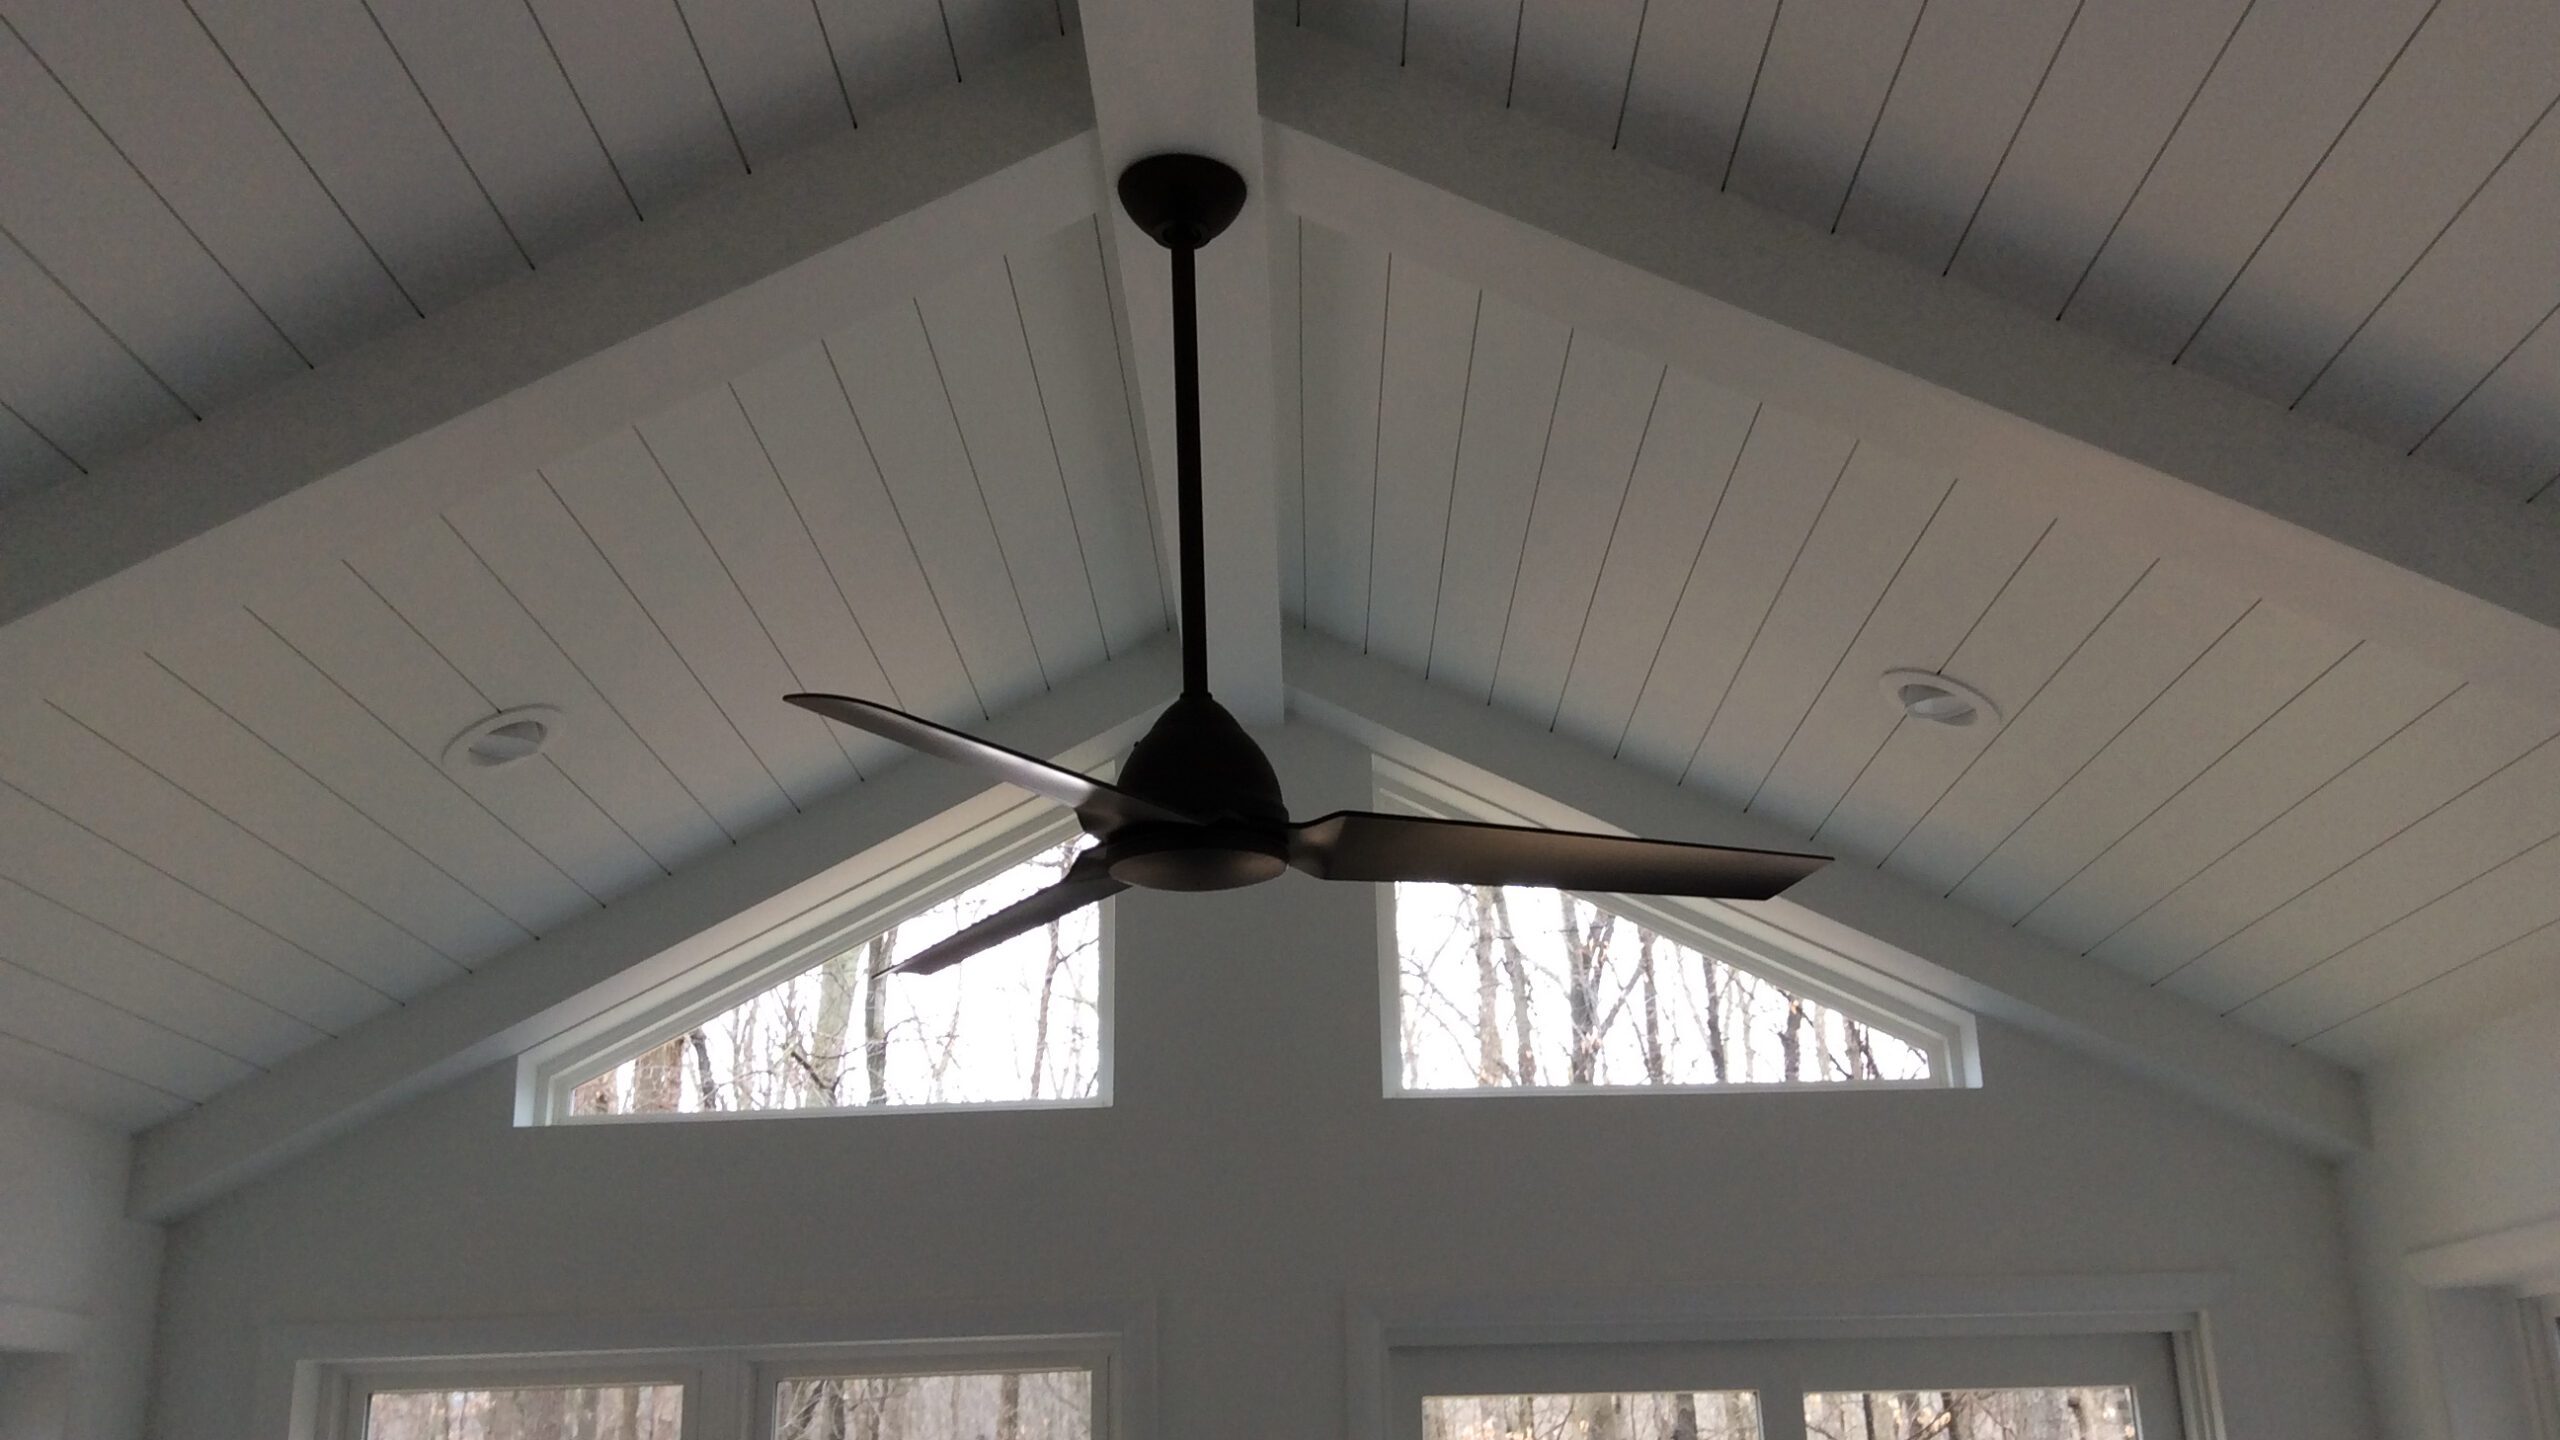 Ceiling fan installed